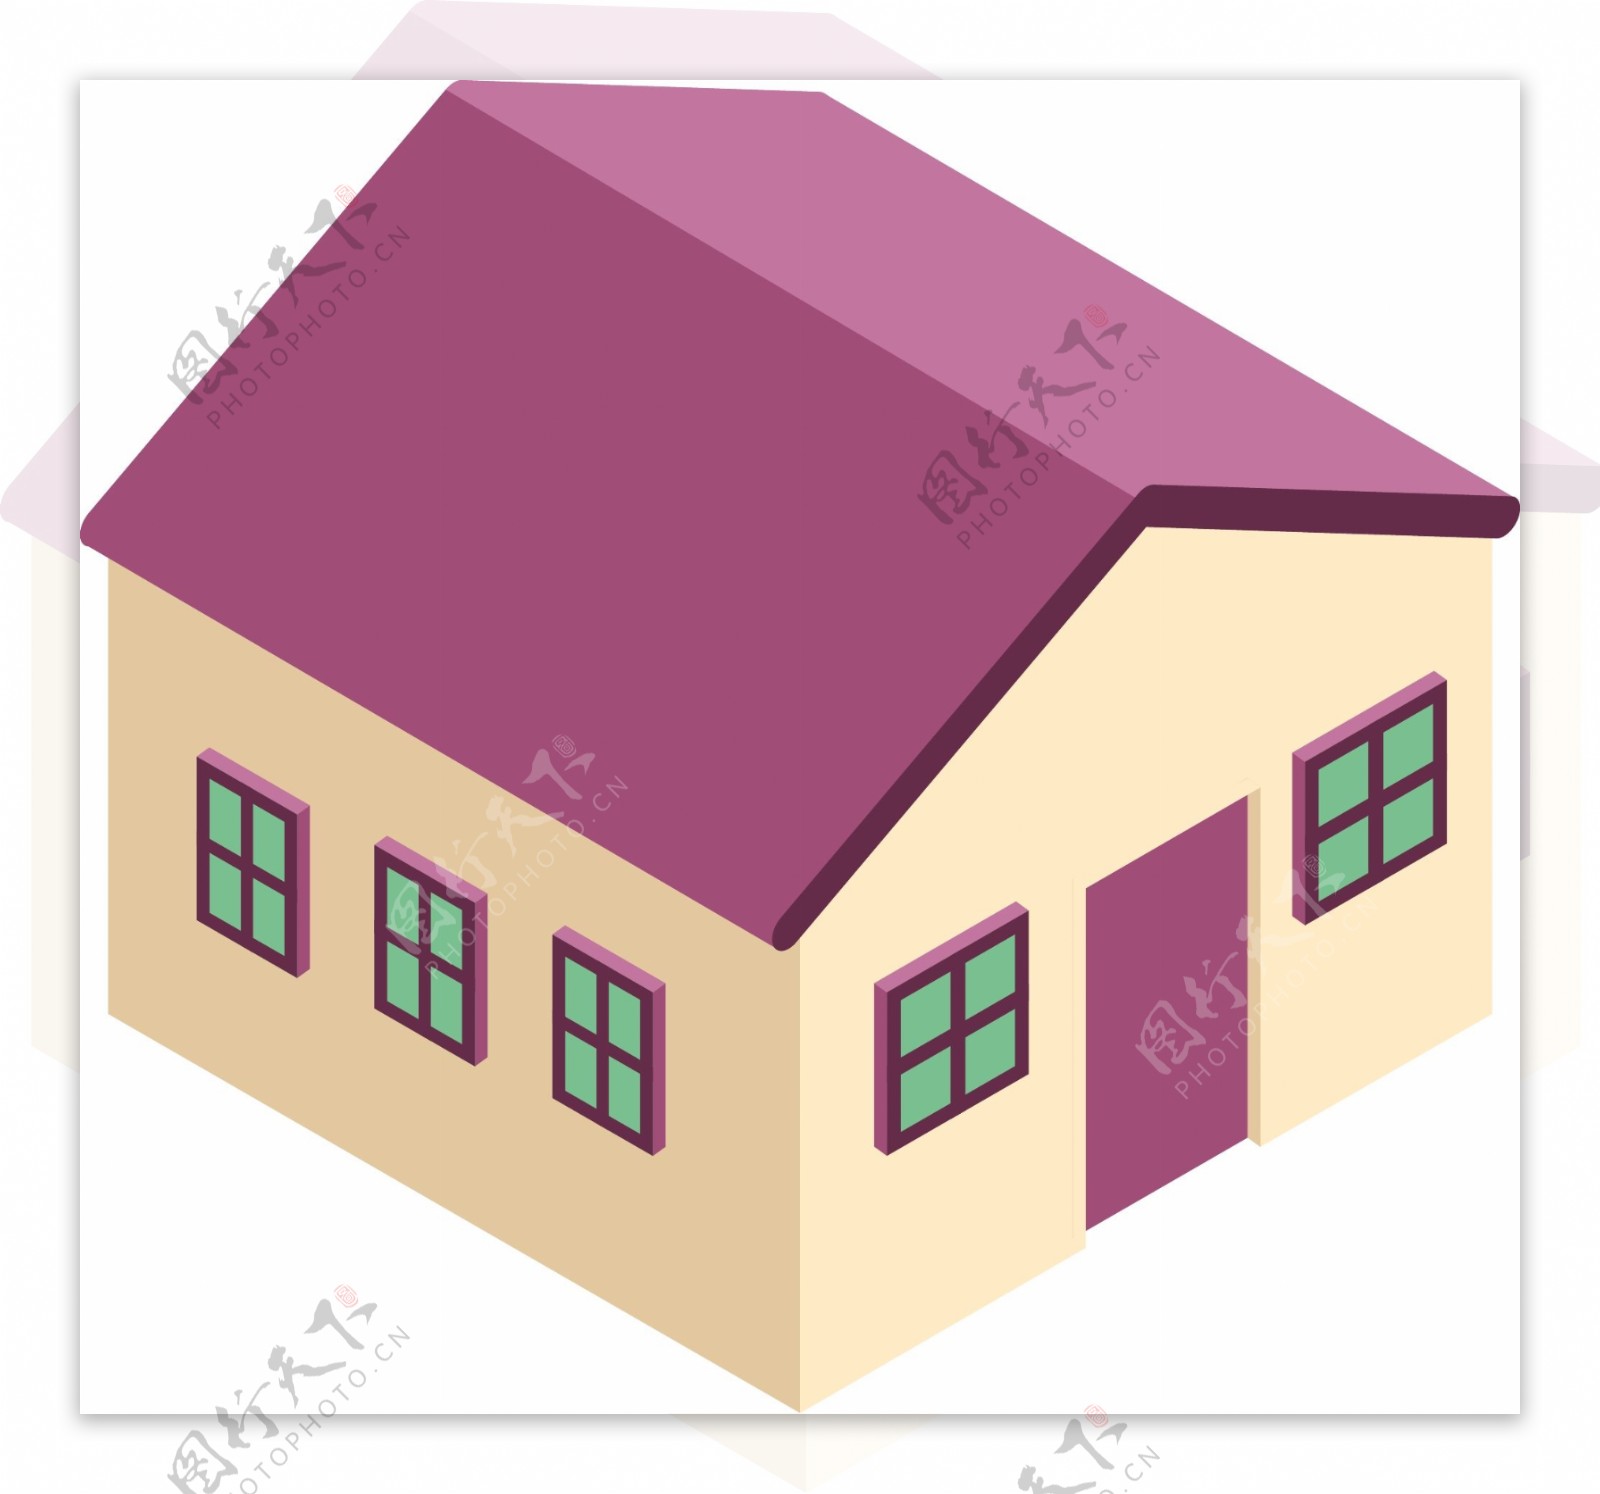 2.5D风格房屋建筑元素可商用